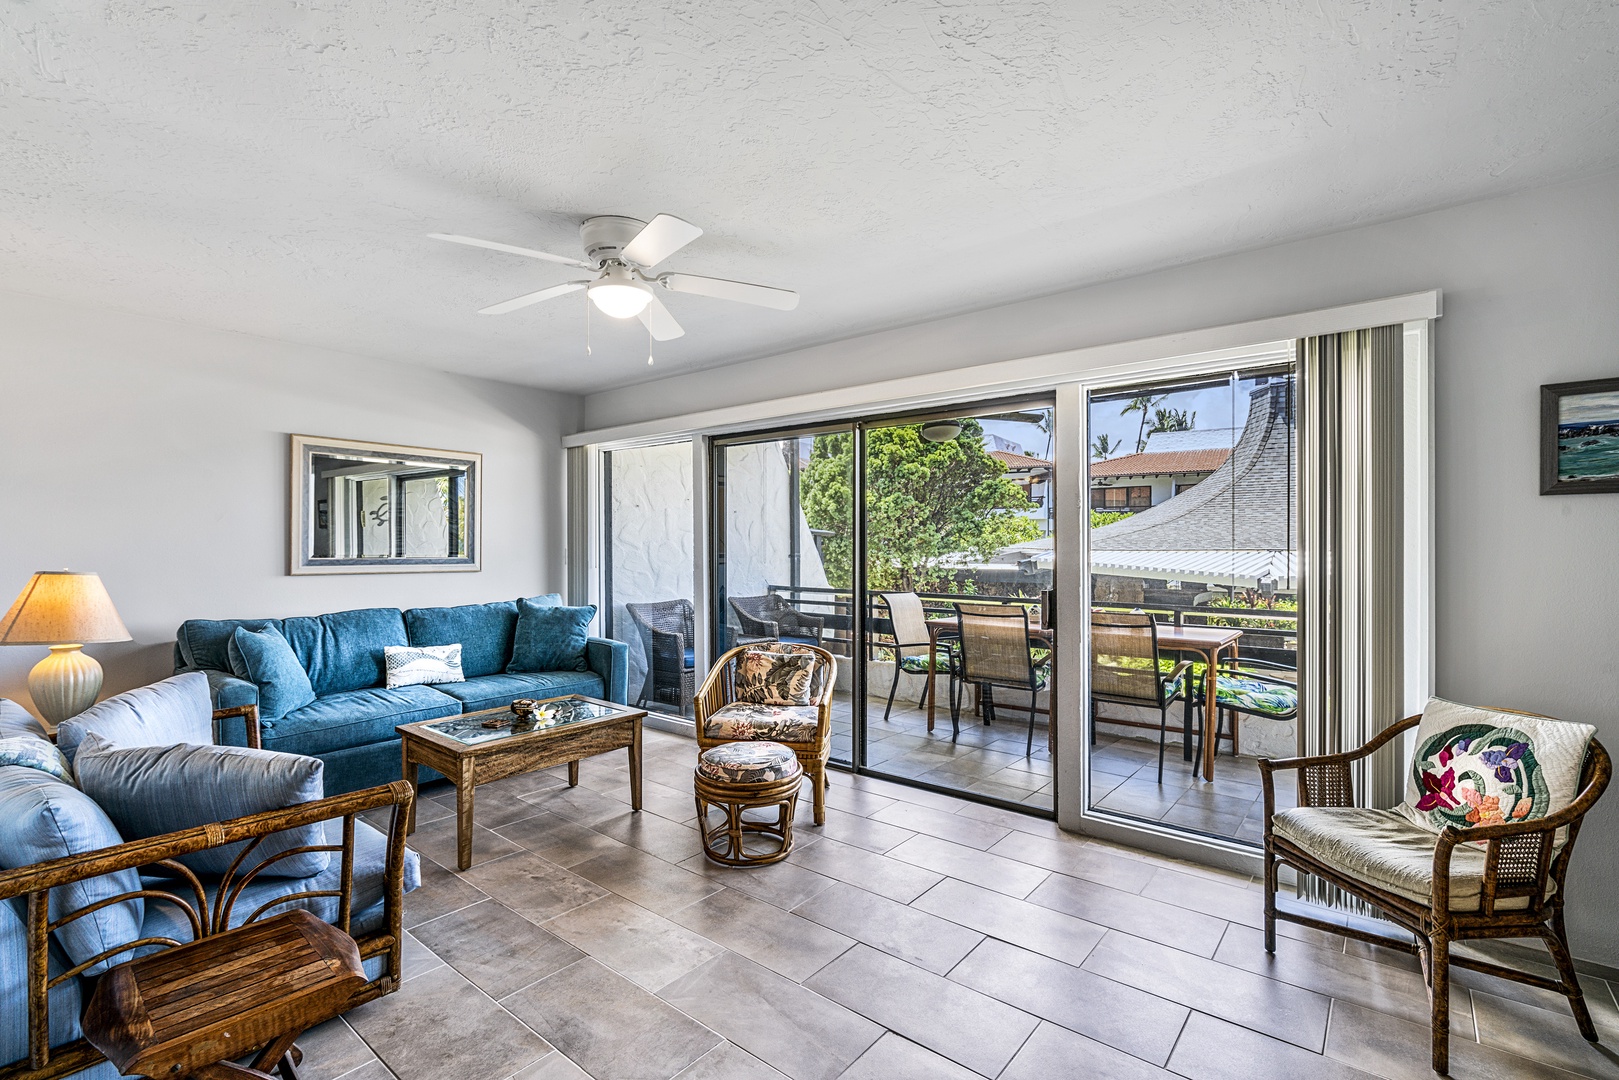 Kailua Kona Vacation Rentals, Casa De Emdeko 235 - Living room with Queen sleeper sofa